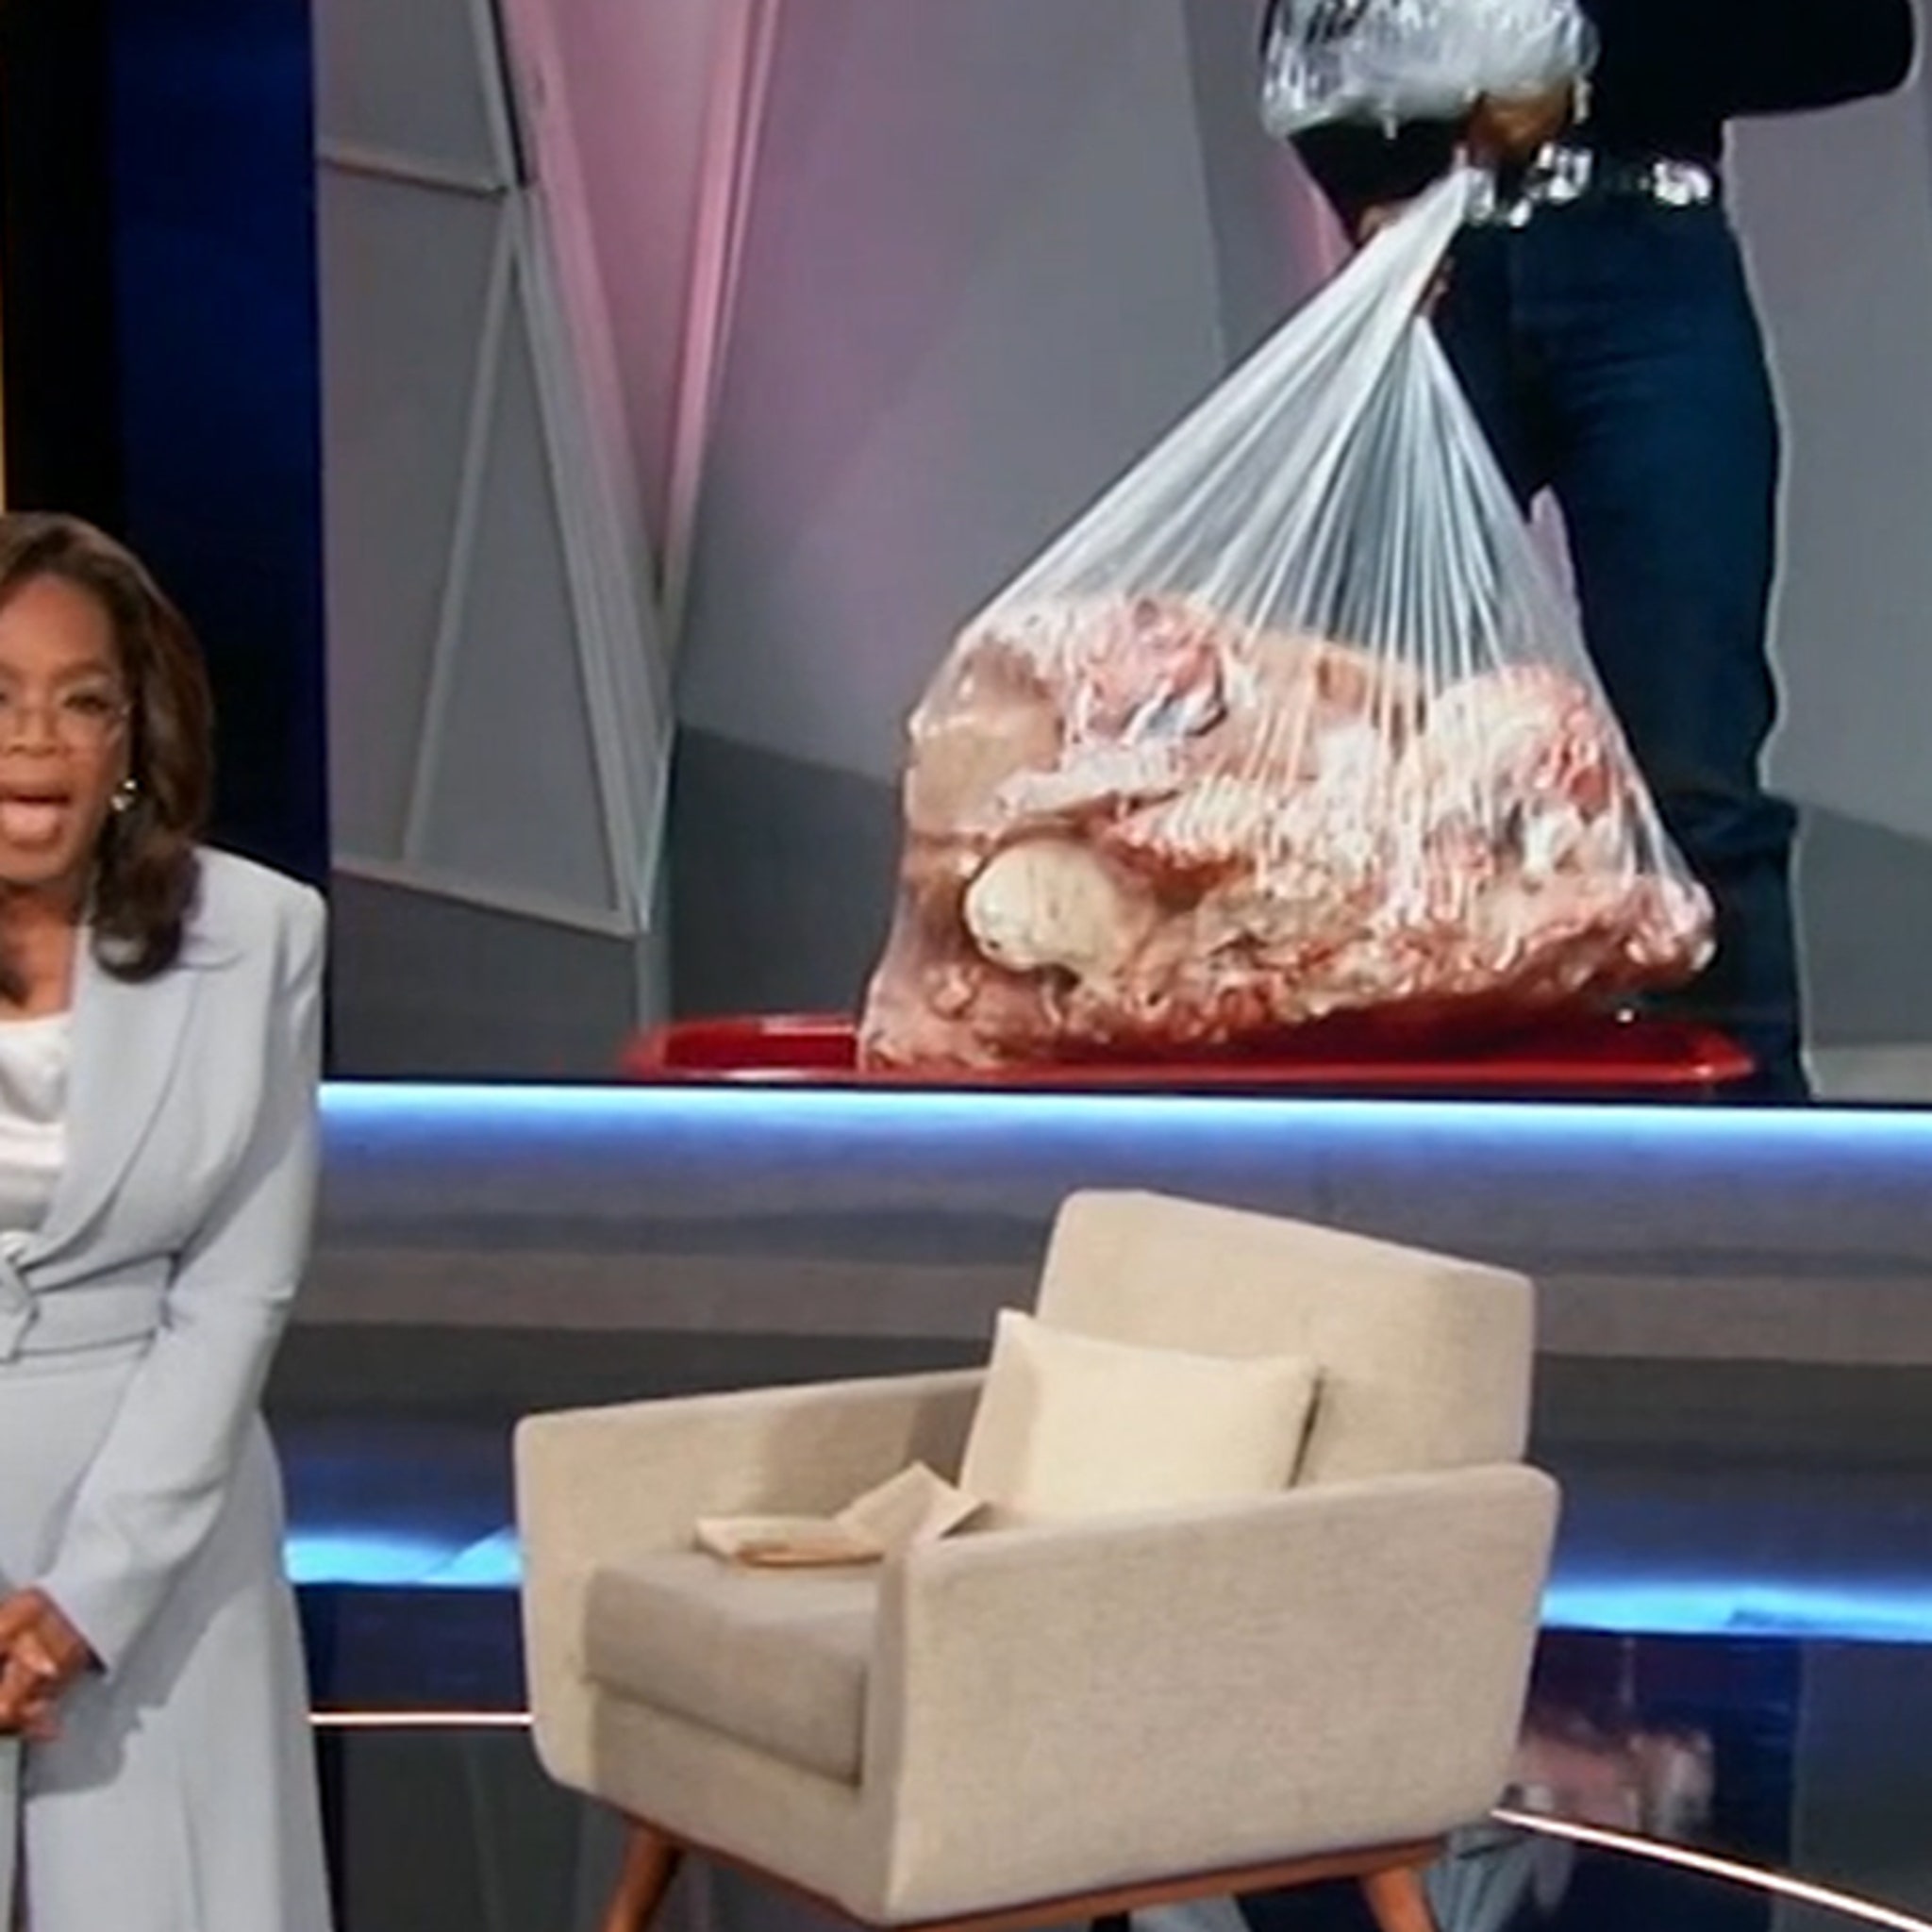 Oprah Winfrey Recalls Diet Where She 'Starved' Herself for '5 Months